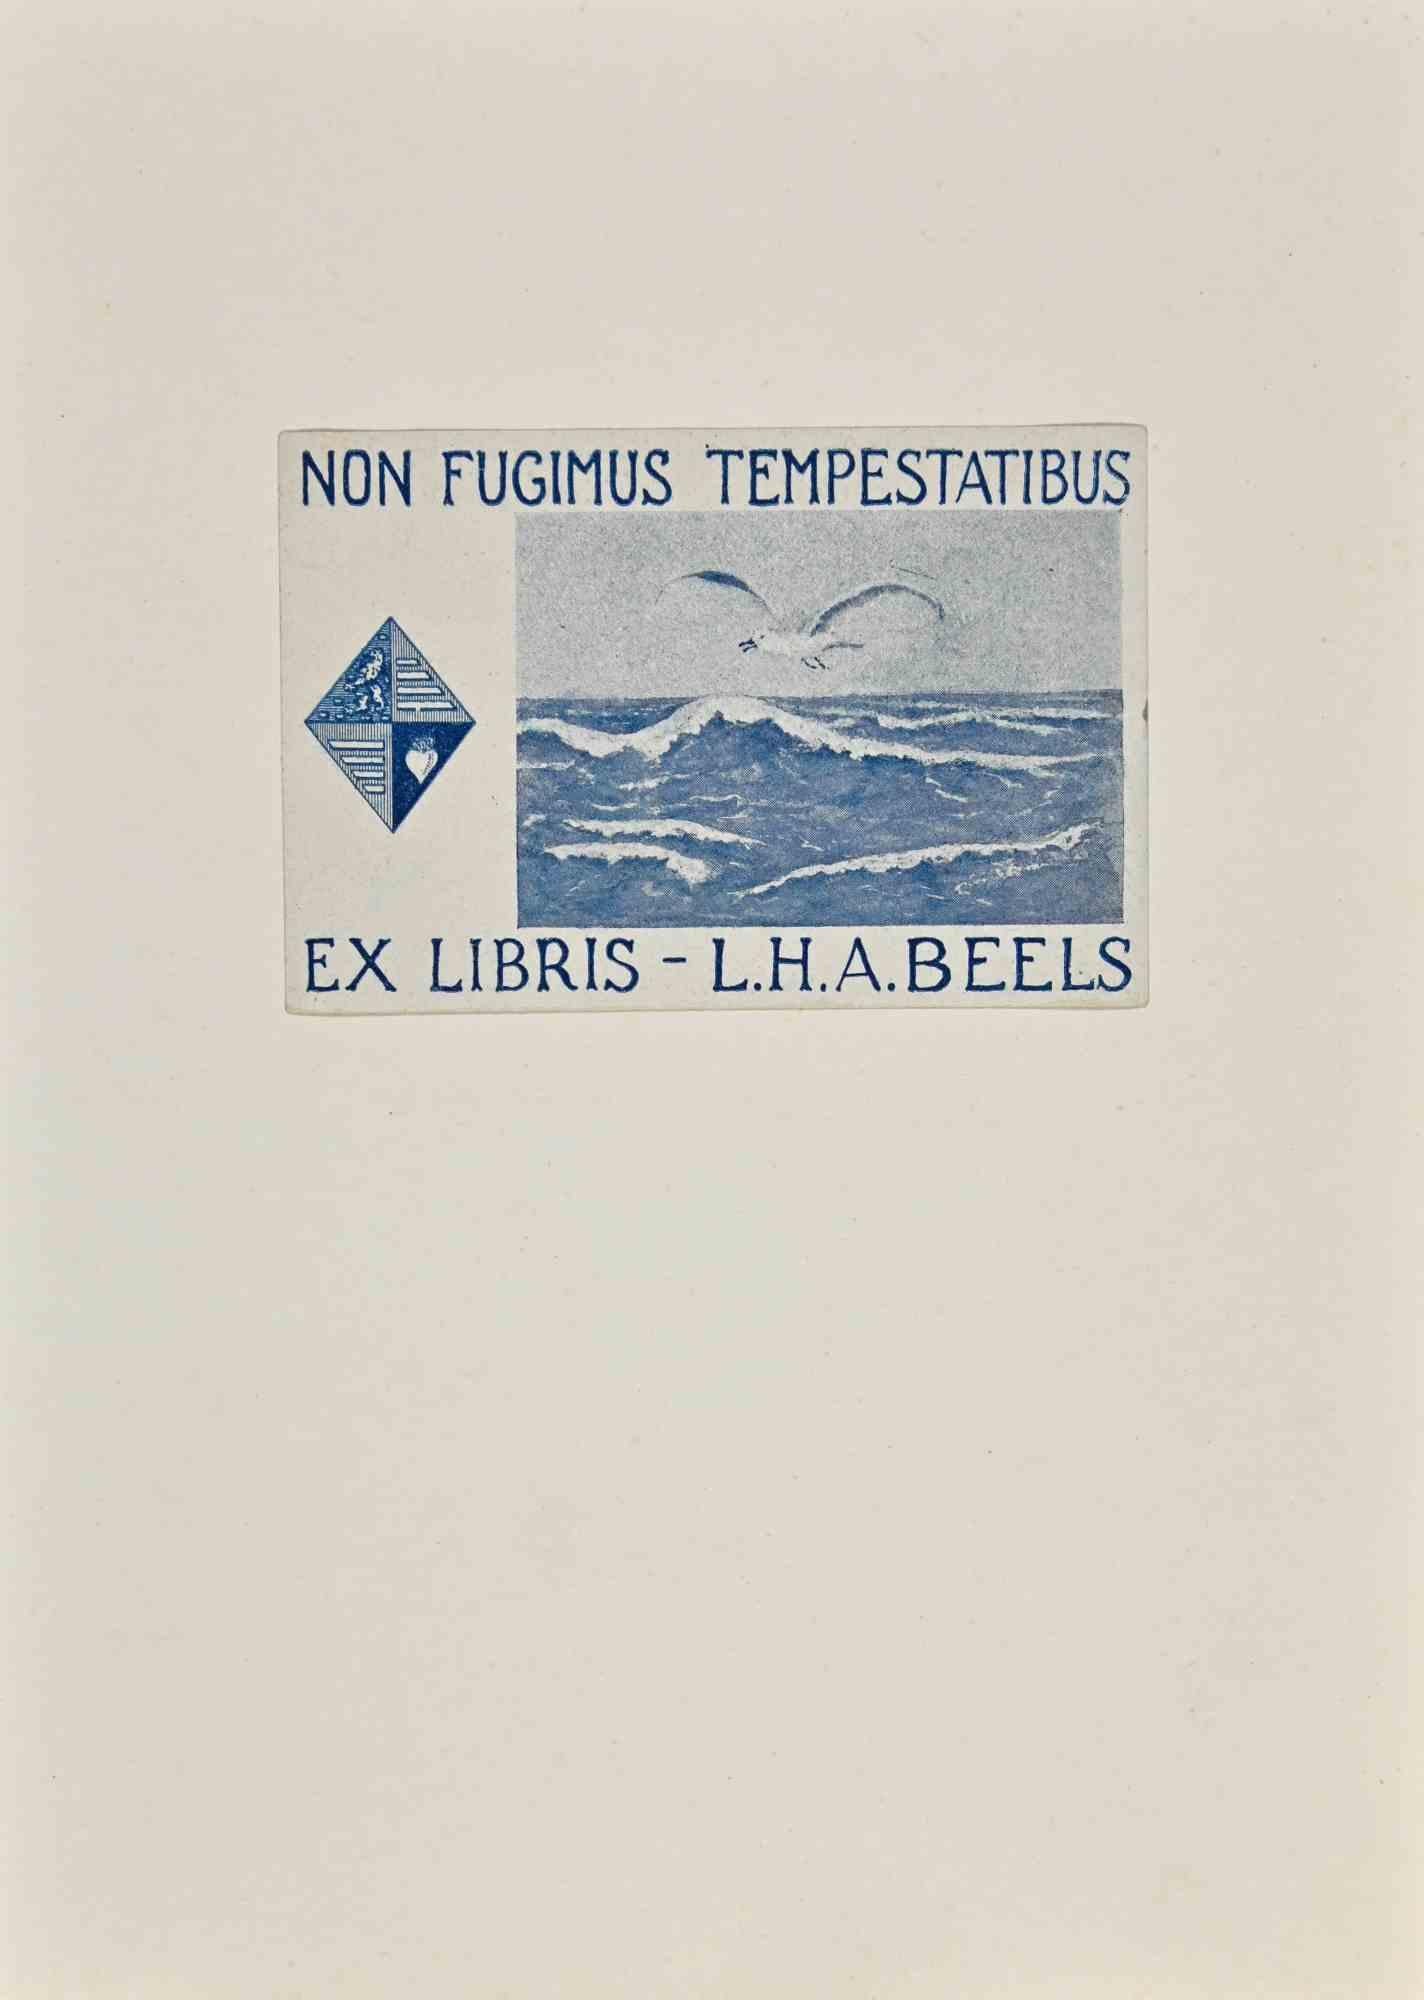 Unknown Figurative Print - Non Fugimus Tempestatibus. Ex Libris- L.H. A. Beels - Woodcut - Mid-20th Century